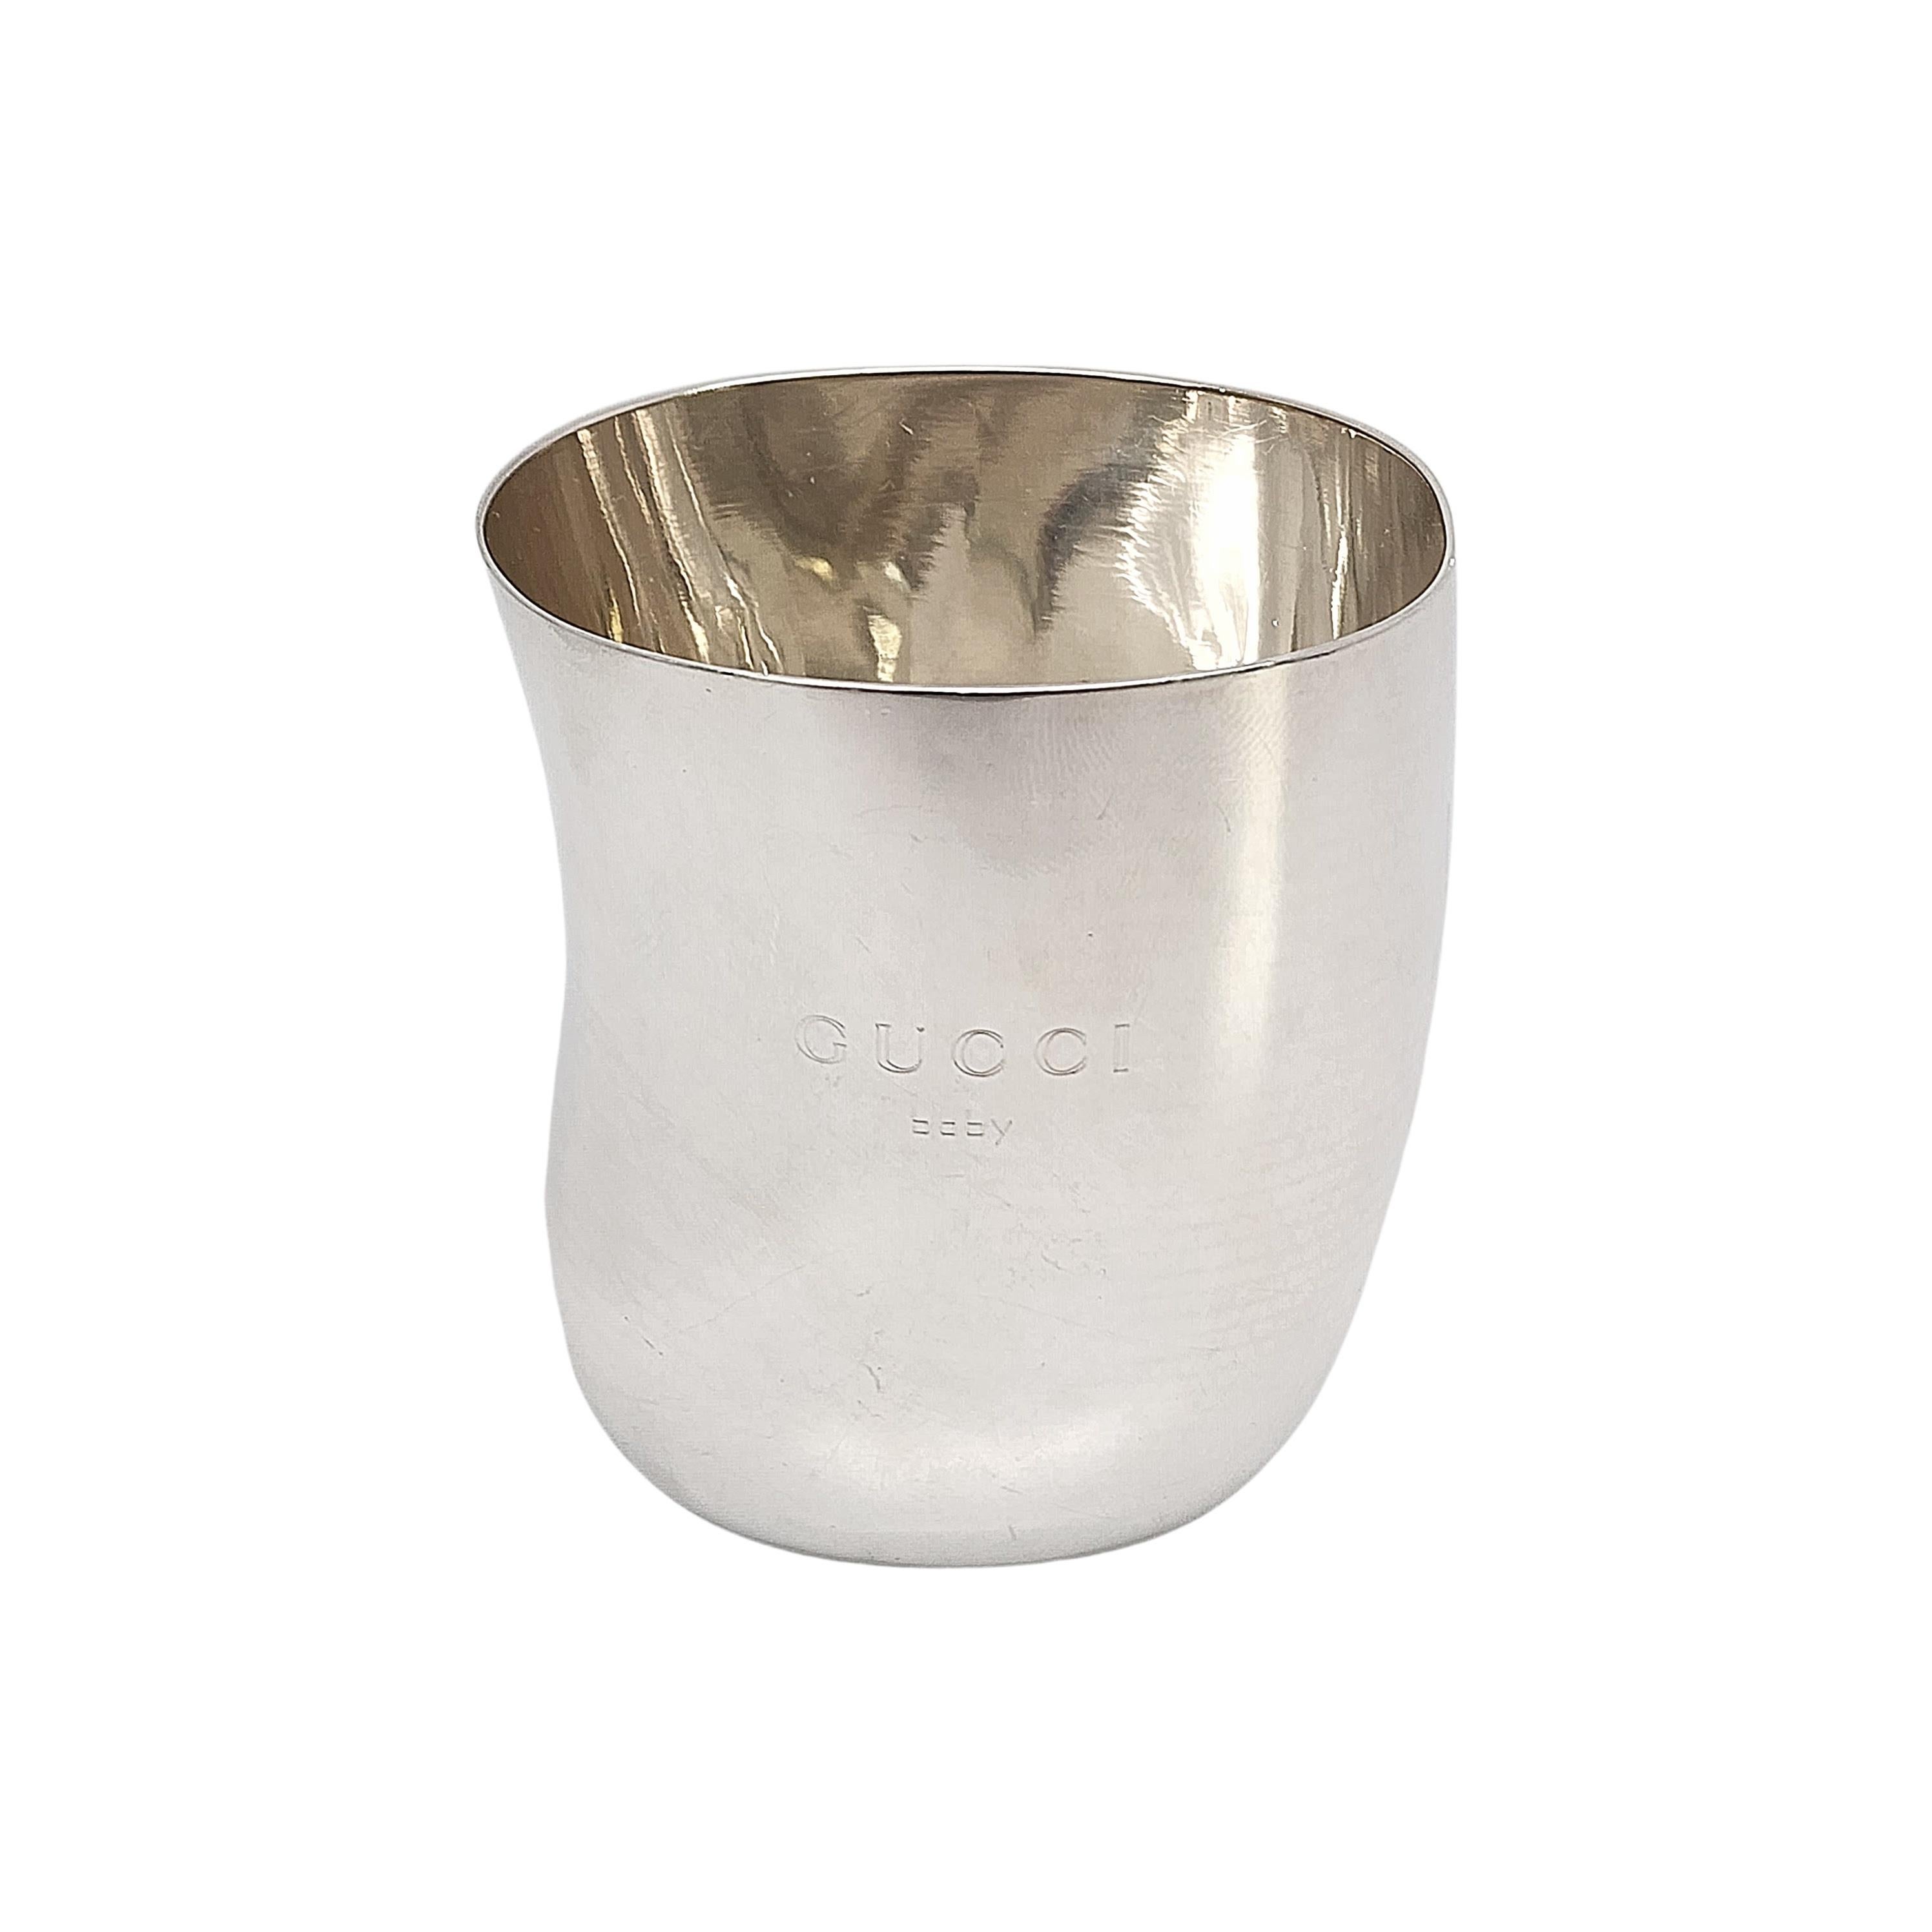 Vintage Gucci sterling silver baby cup.

Pas de monogramme

Datant de l'époque Tom Ford chez Gucci, vers les années 1990, ce gobelet pour bébé est gravé de l'inscription 